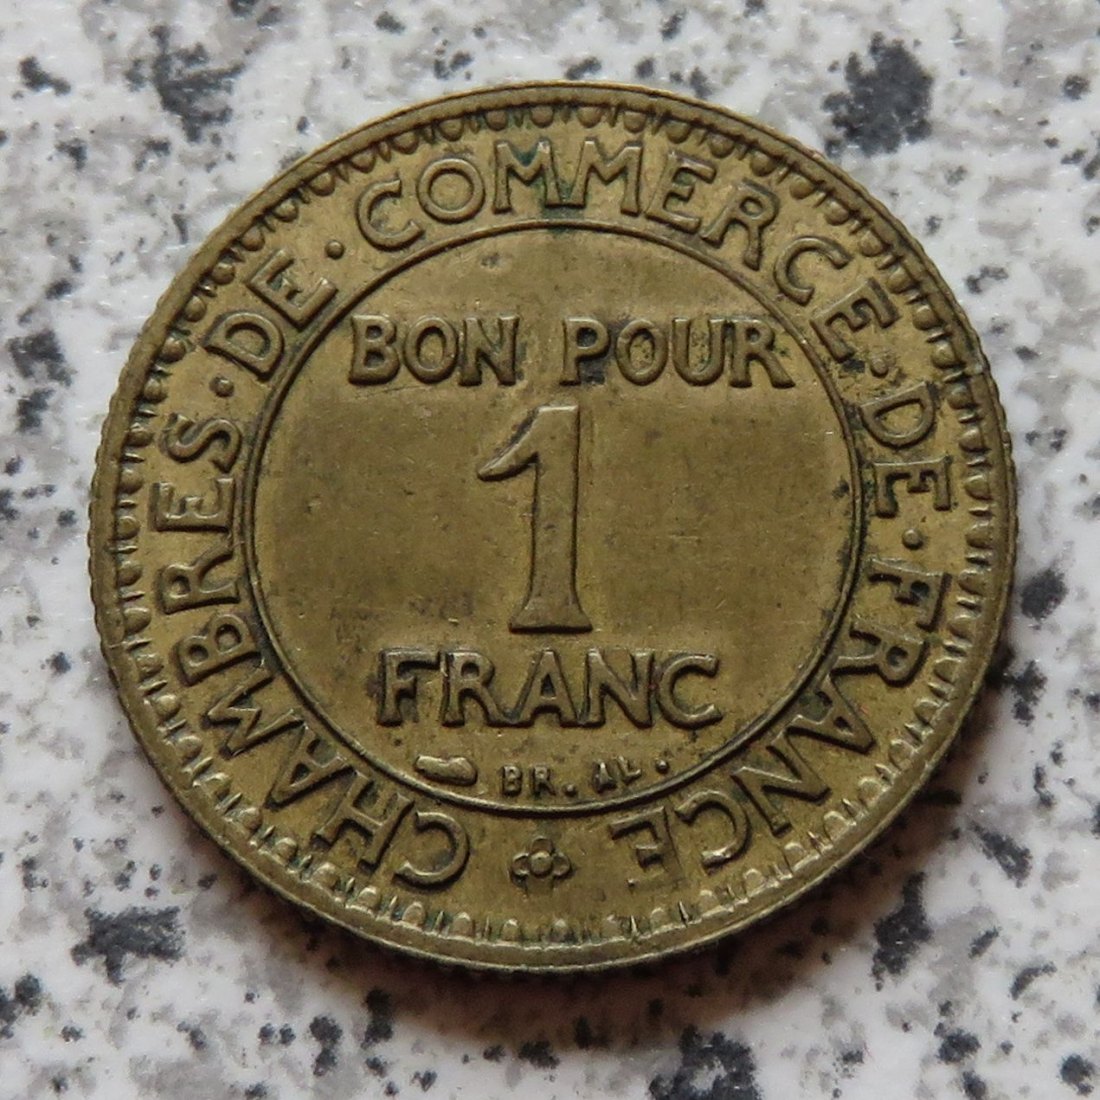  Frankreich 1 Franc 1925   